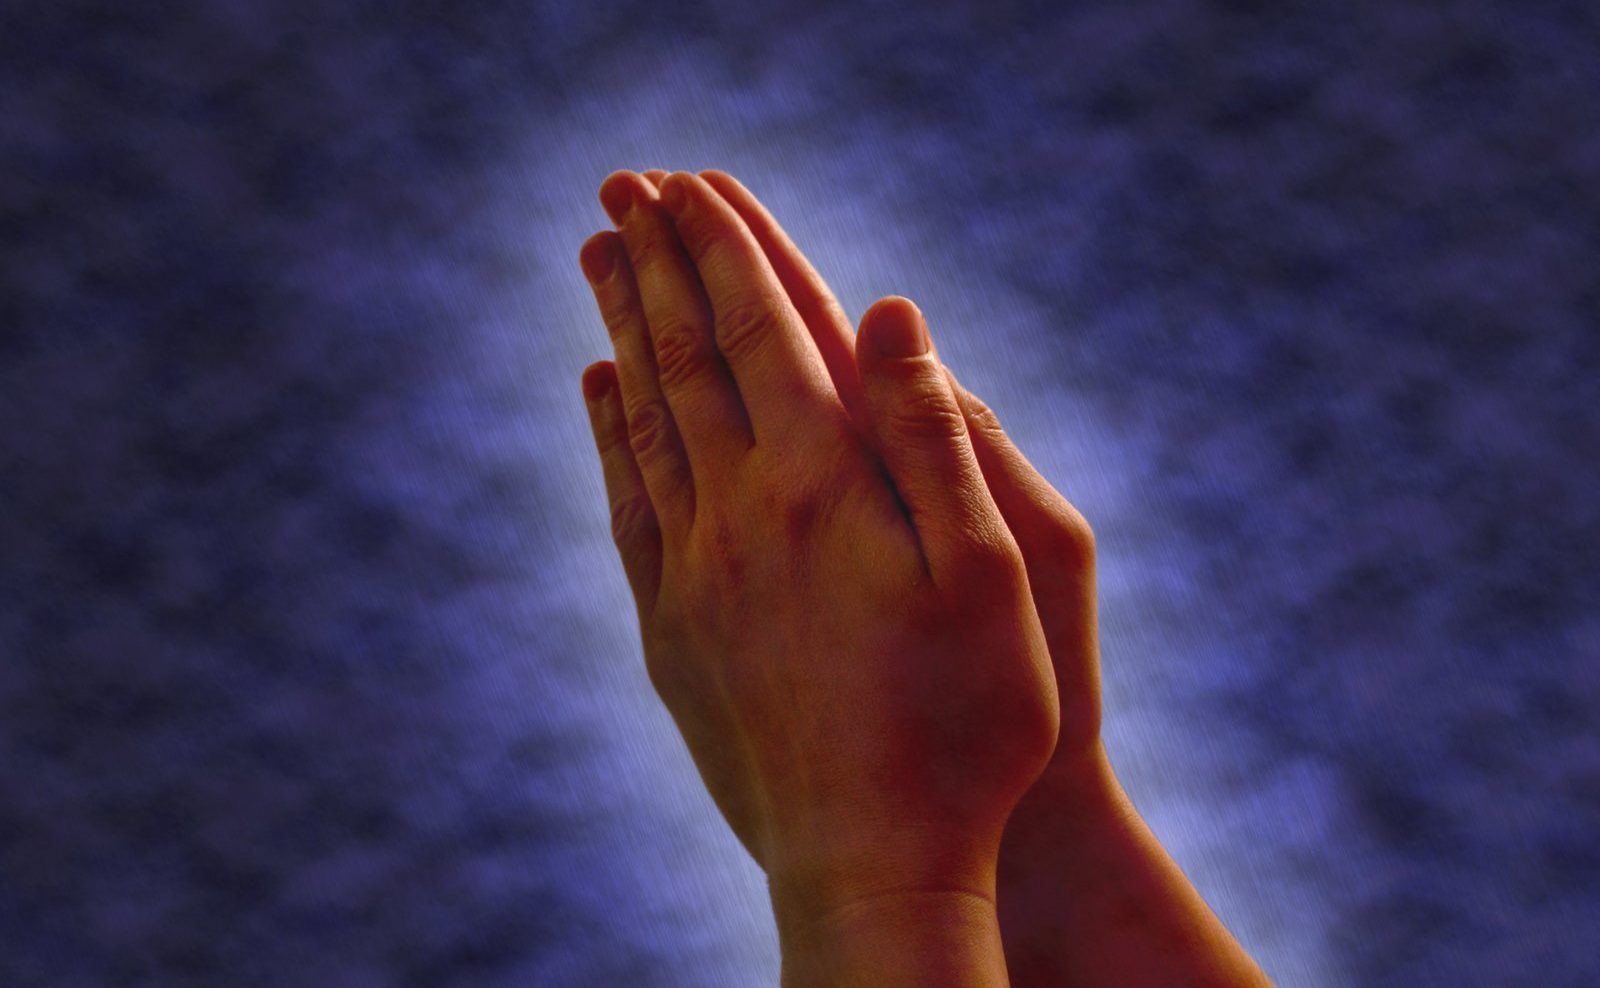 Modlitby v konfliktu milovaných